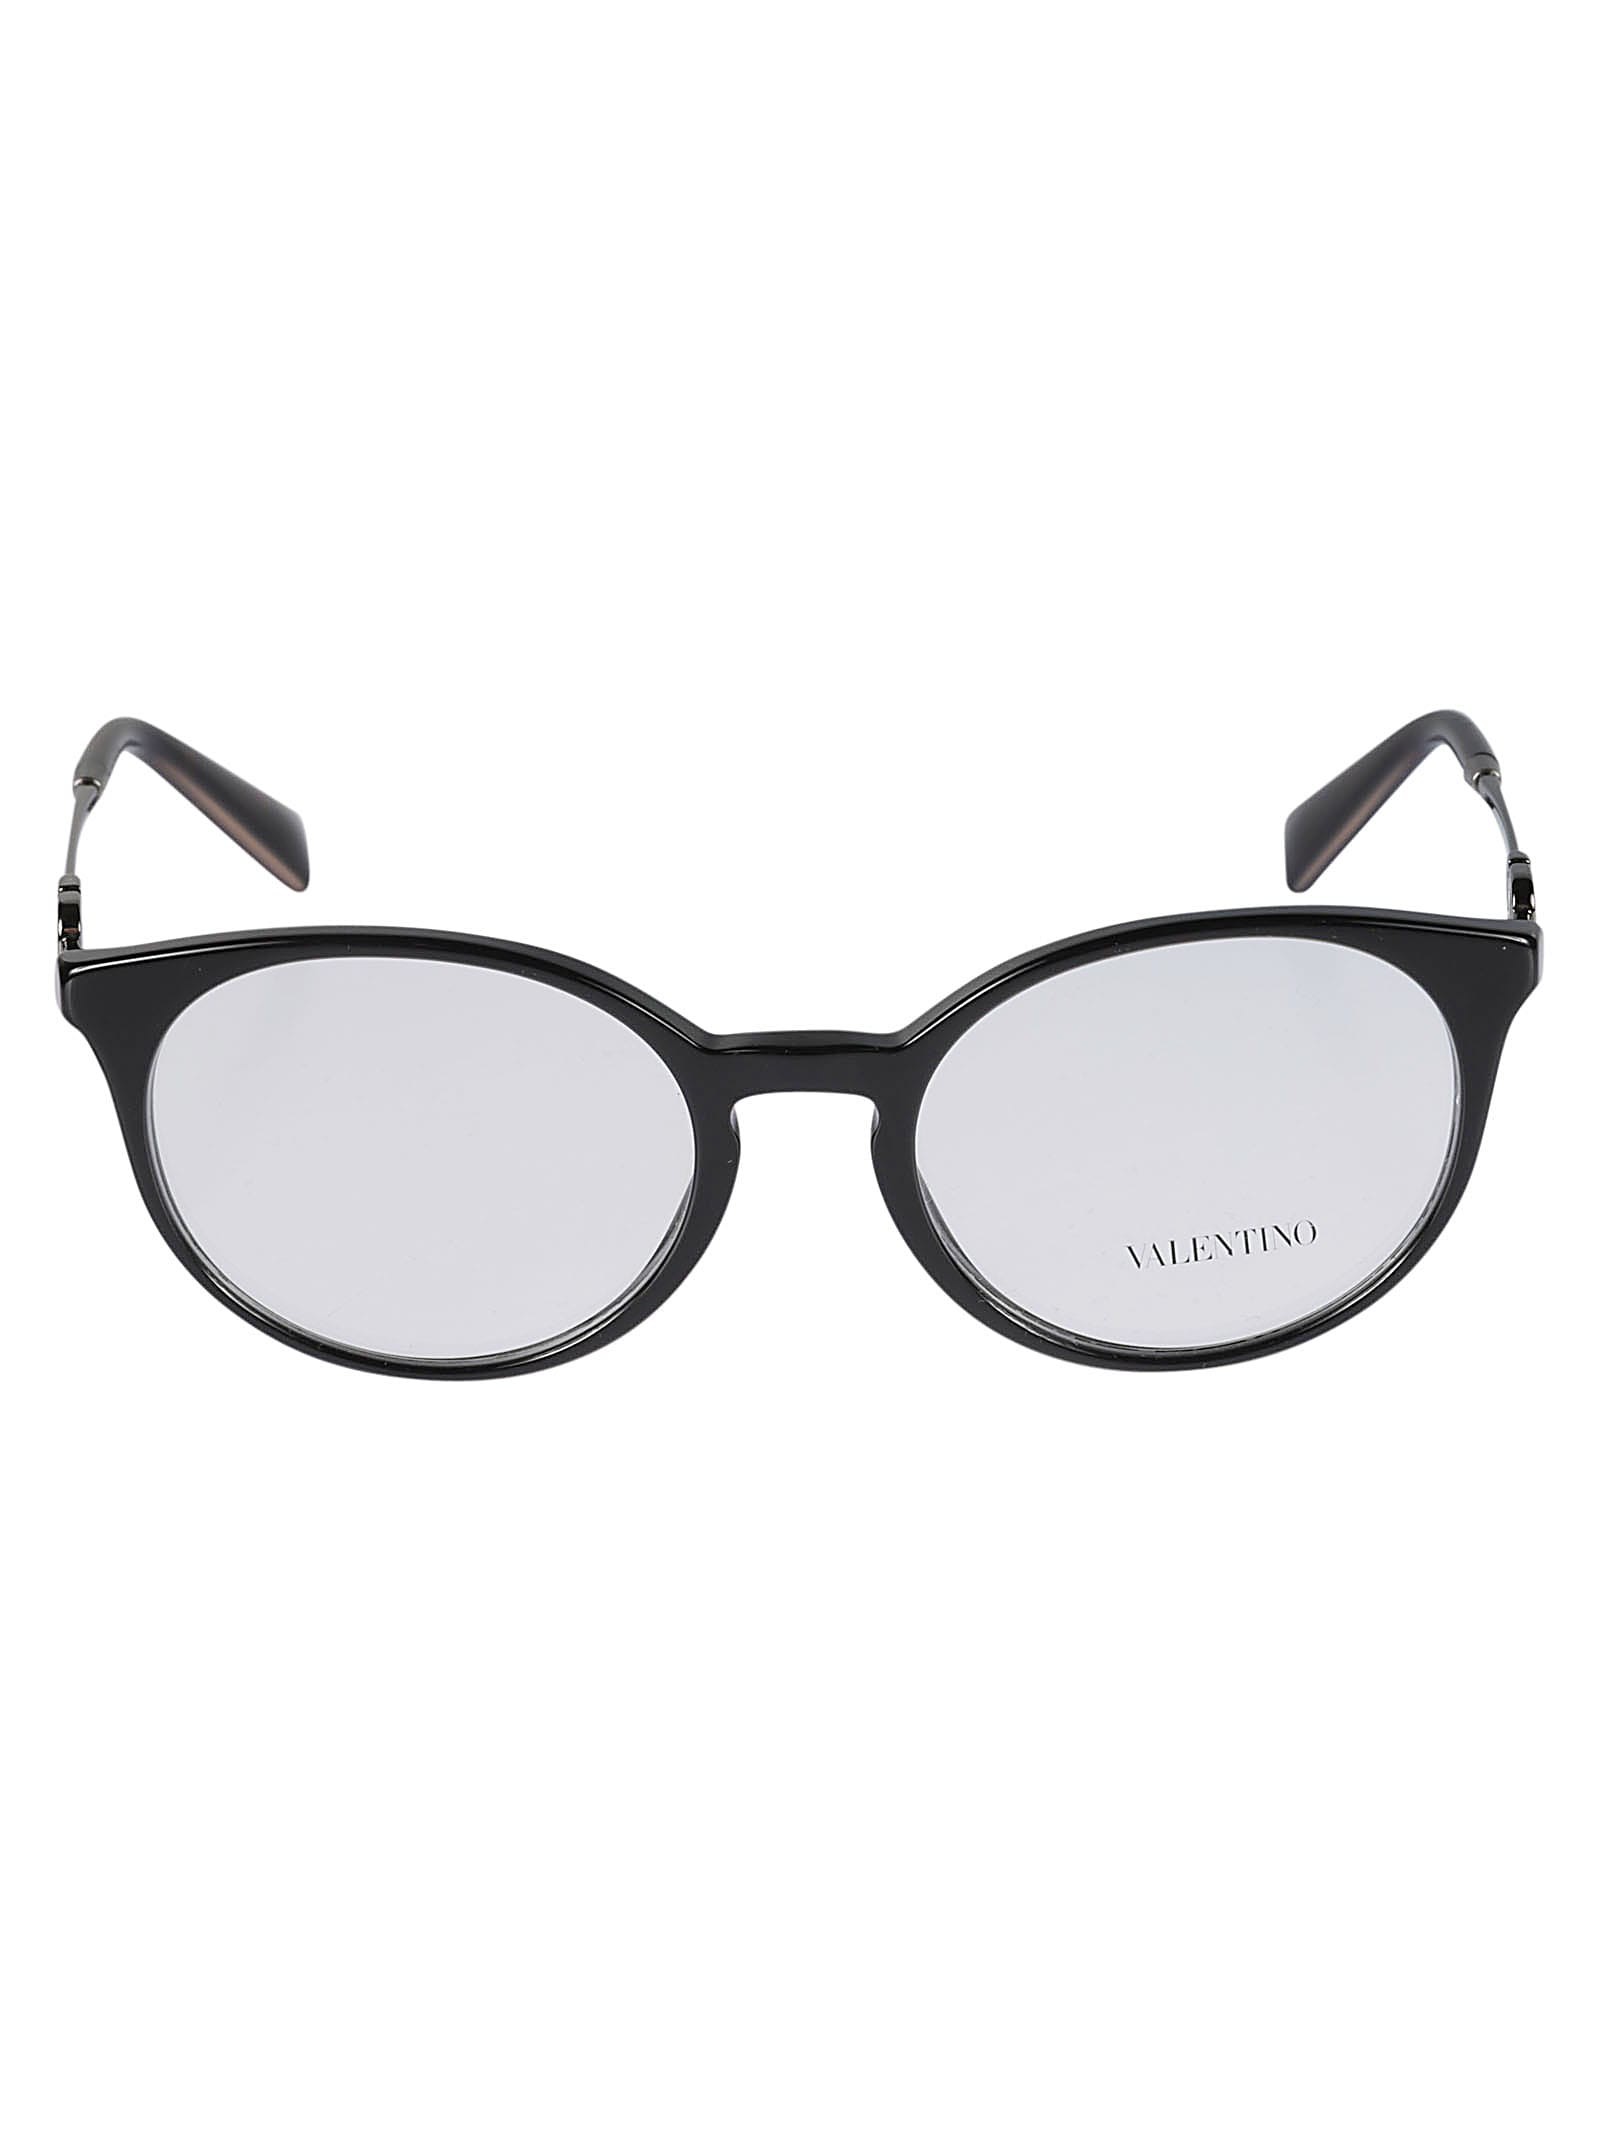 Valentino Vista3068 Glasses